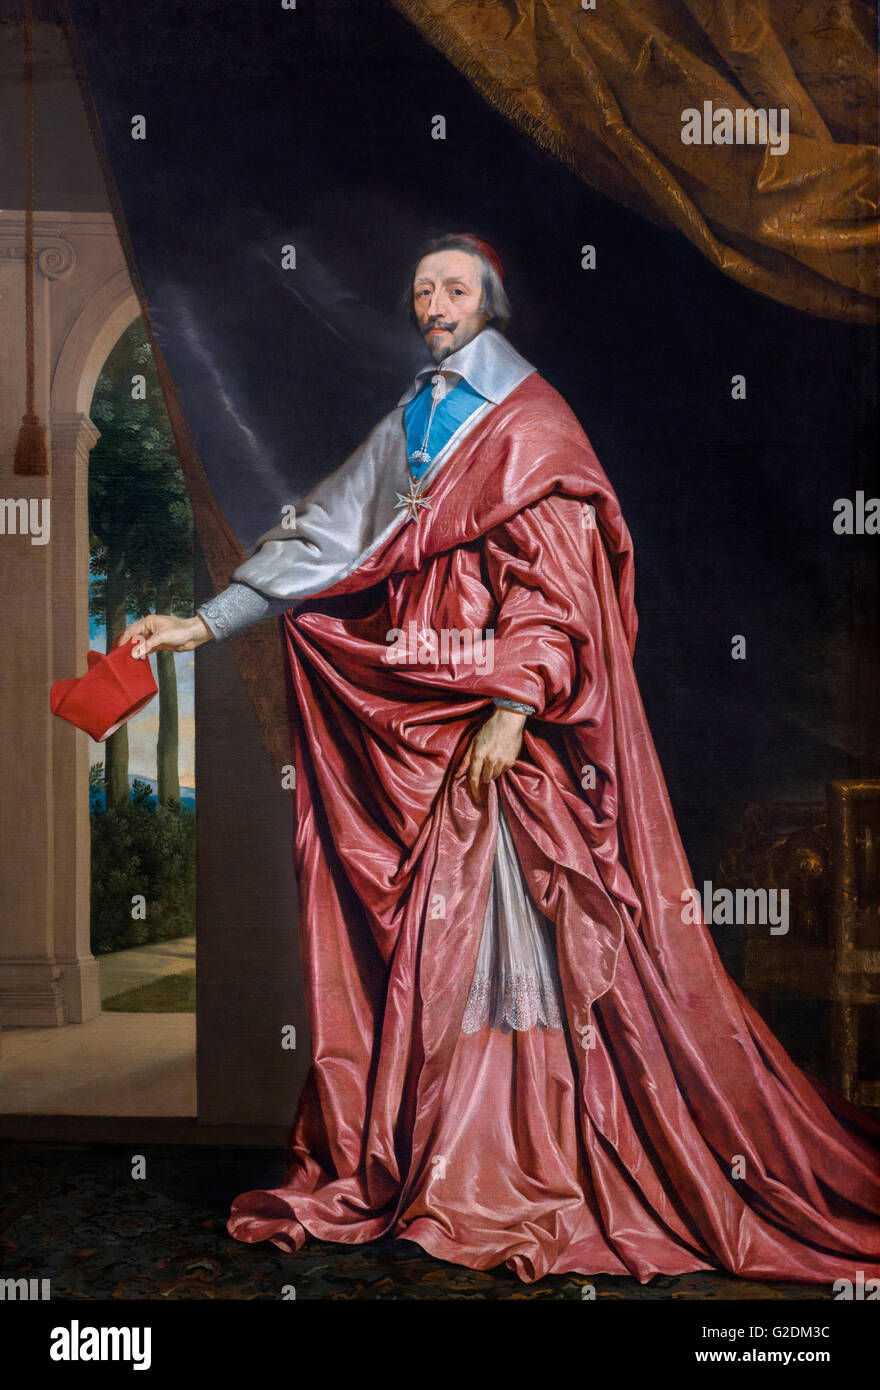 Armand Jean du Plessis, Kardinal-Herzog von Richelieu und von Fronsac (1585-1642), gemeinhin als Kardinal Richelieu, war ein französischer Geistlicher, Edelmann und Staatsmann und Hauptminister von König Louis XIII. Porträt von Philippe de Champaigne, Öl auf Leinwand, c.1633-40. Stockfoto